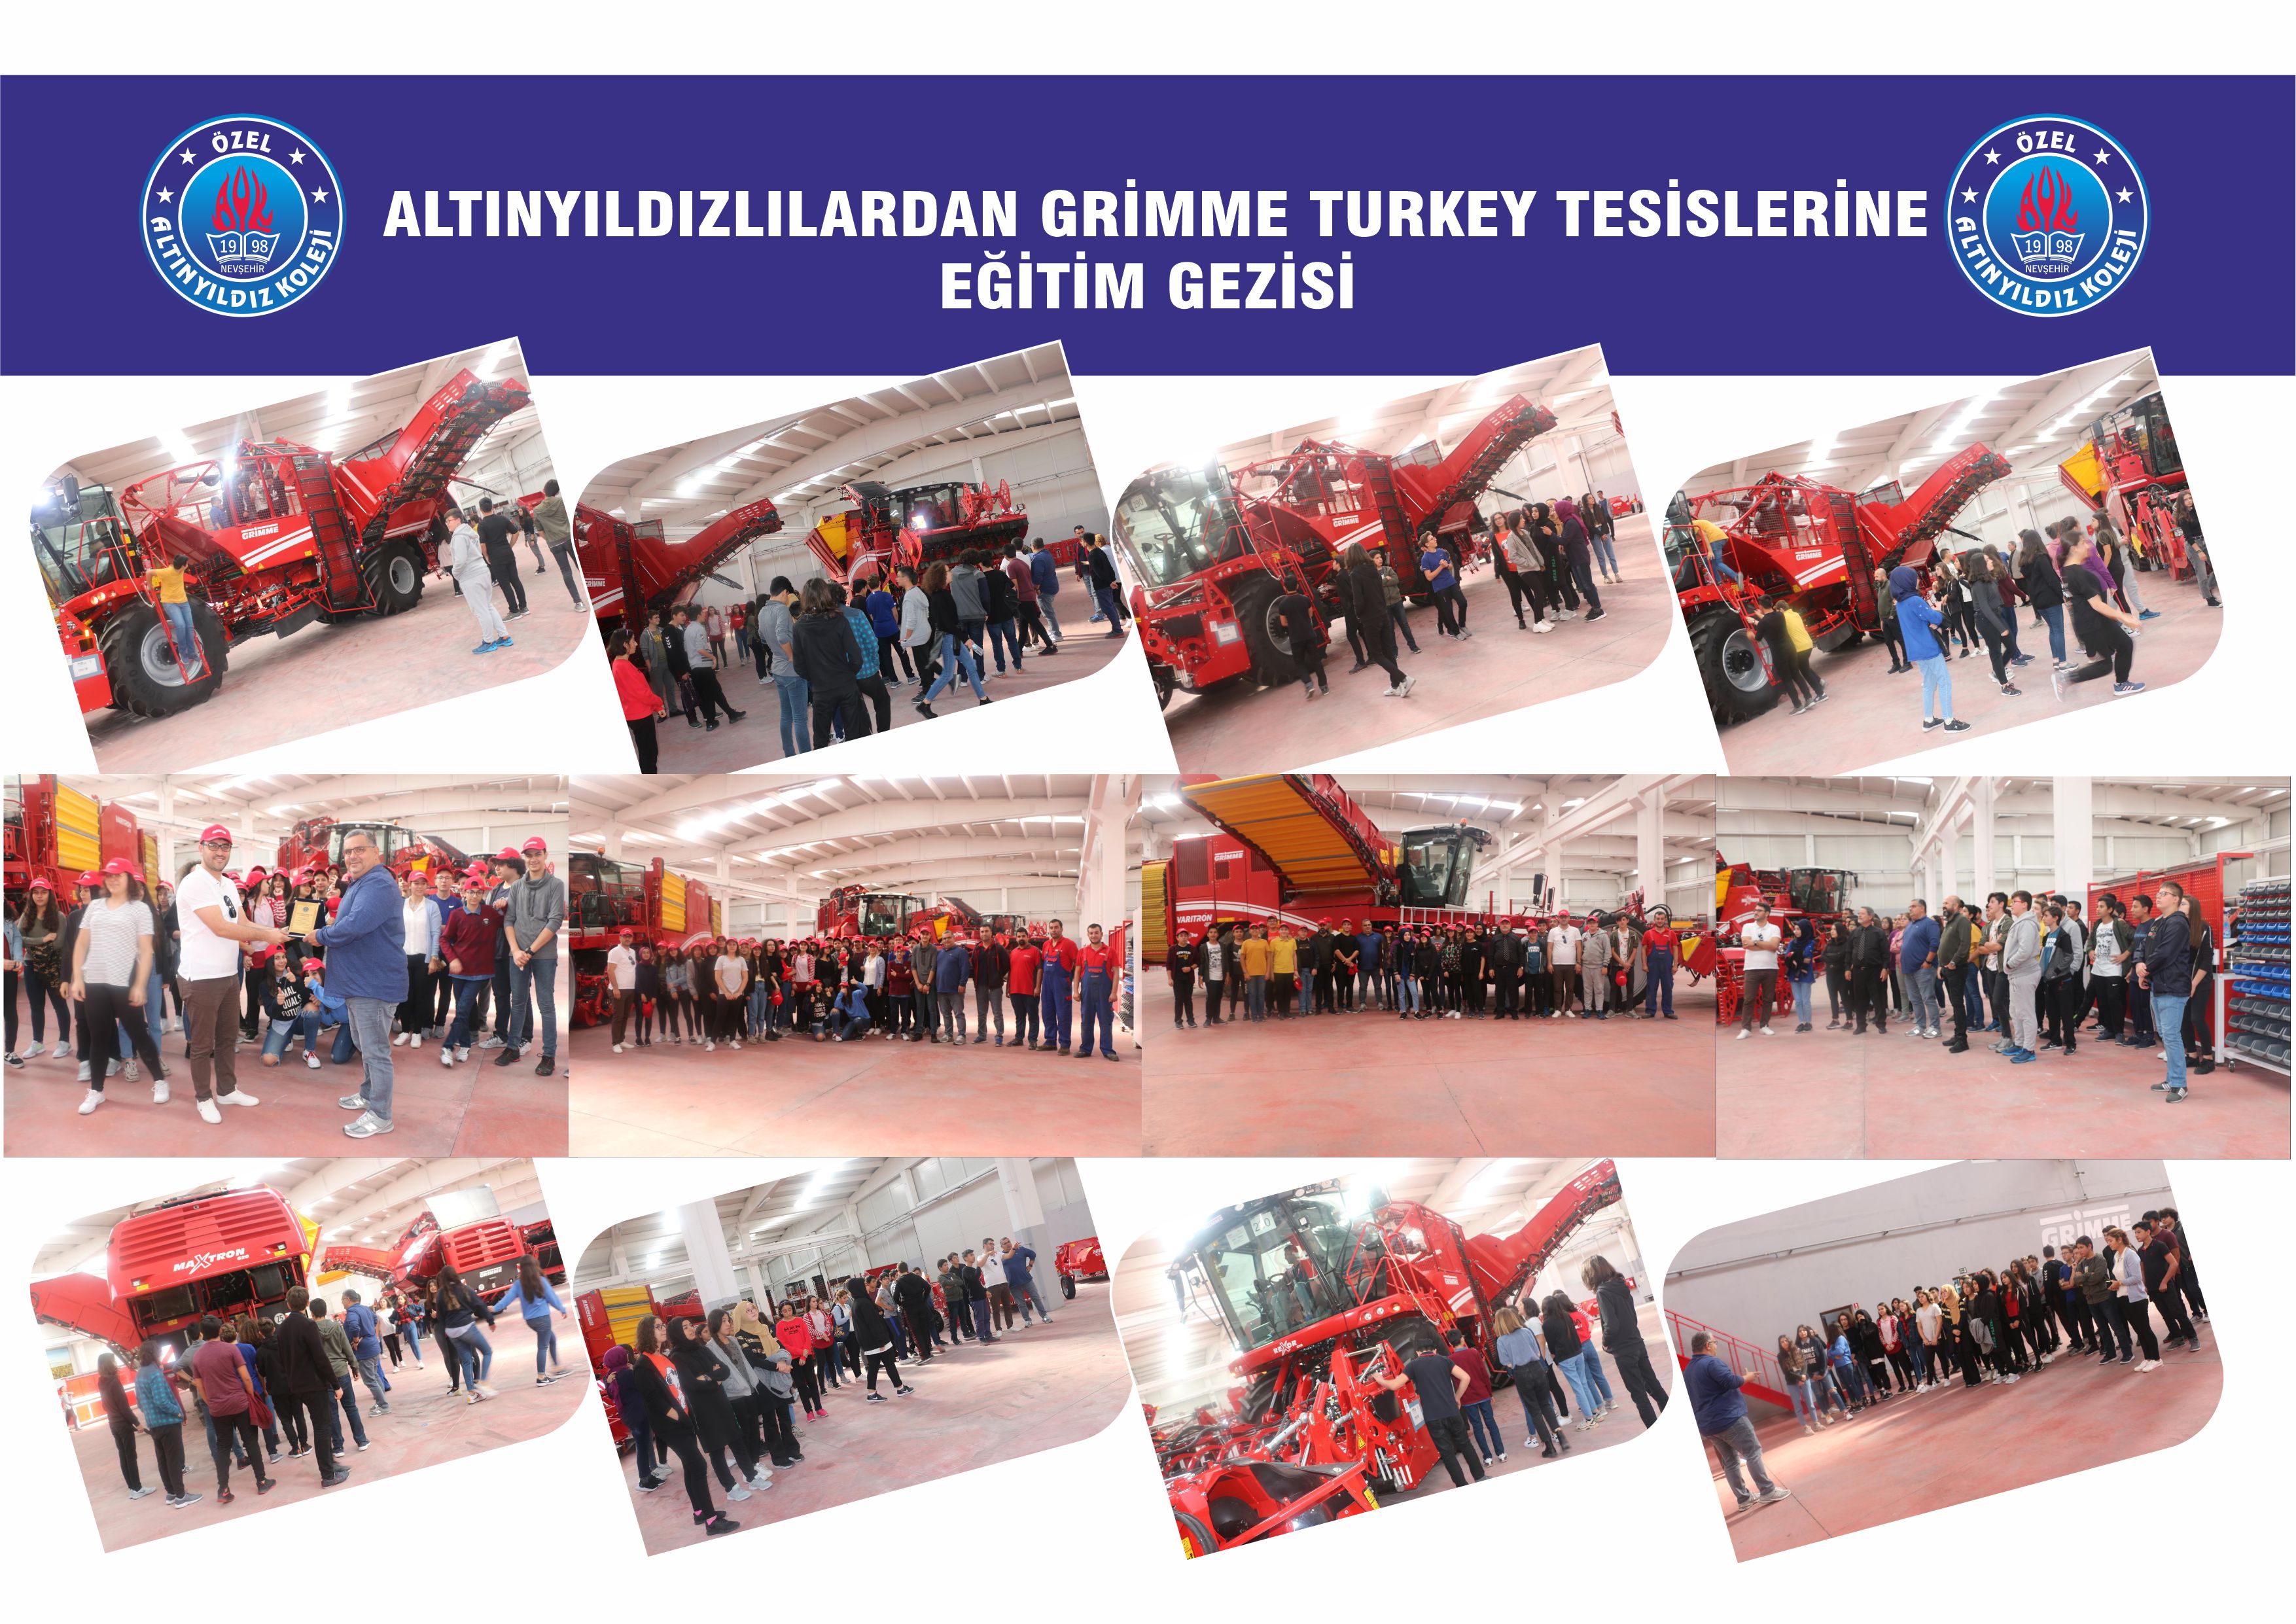 Altınyıldızlılardan Grimme Turkey tesislerine  Eğitim gezisi